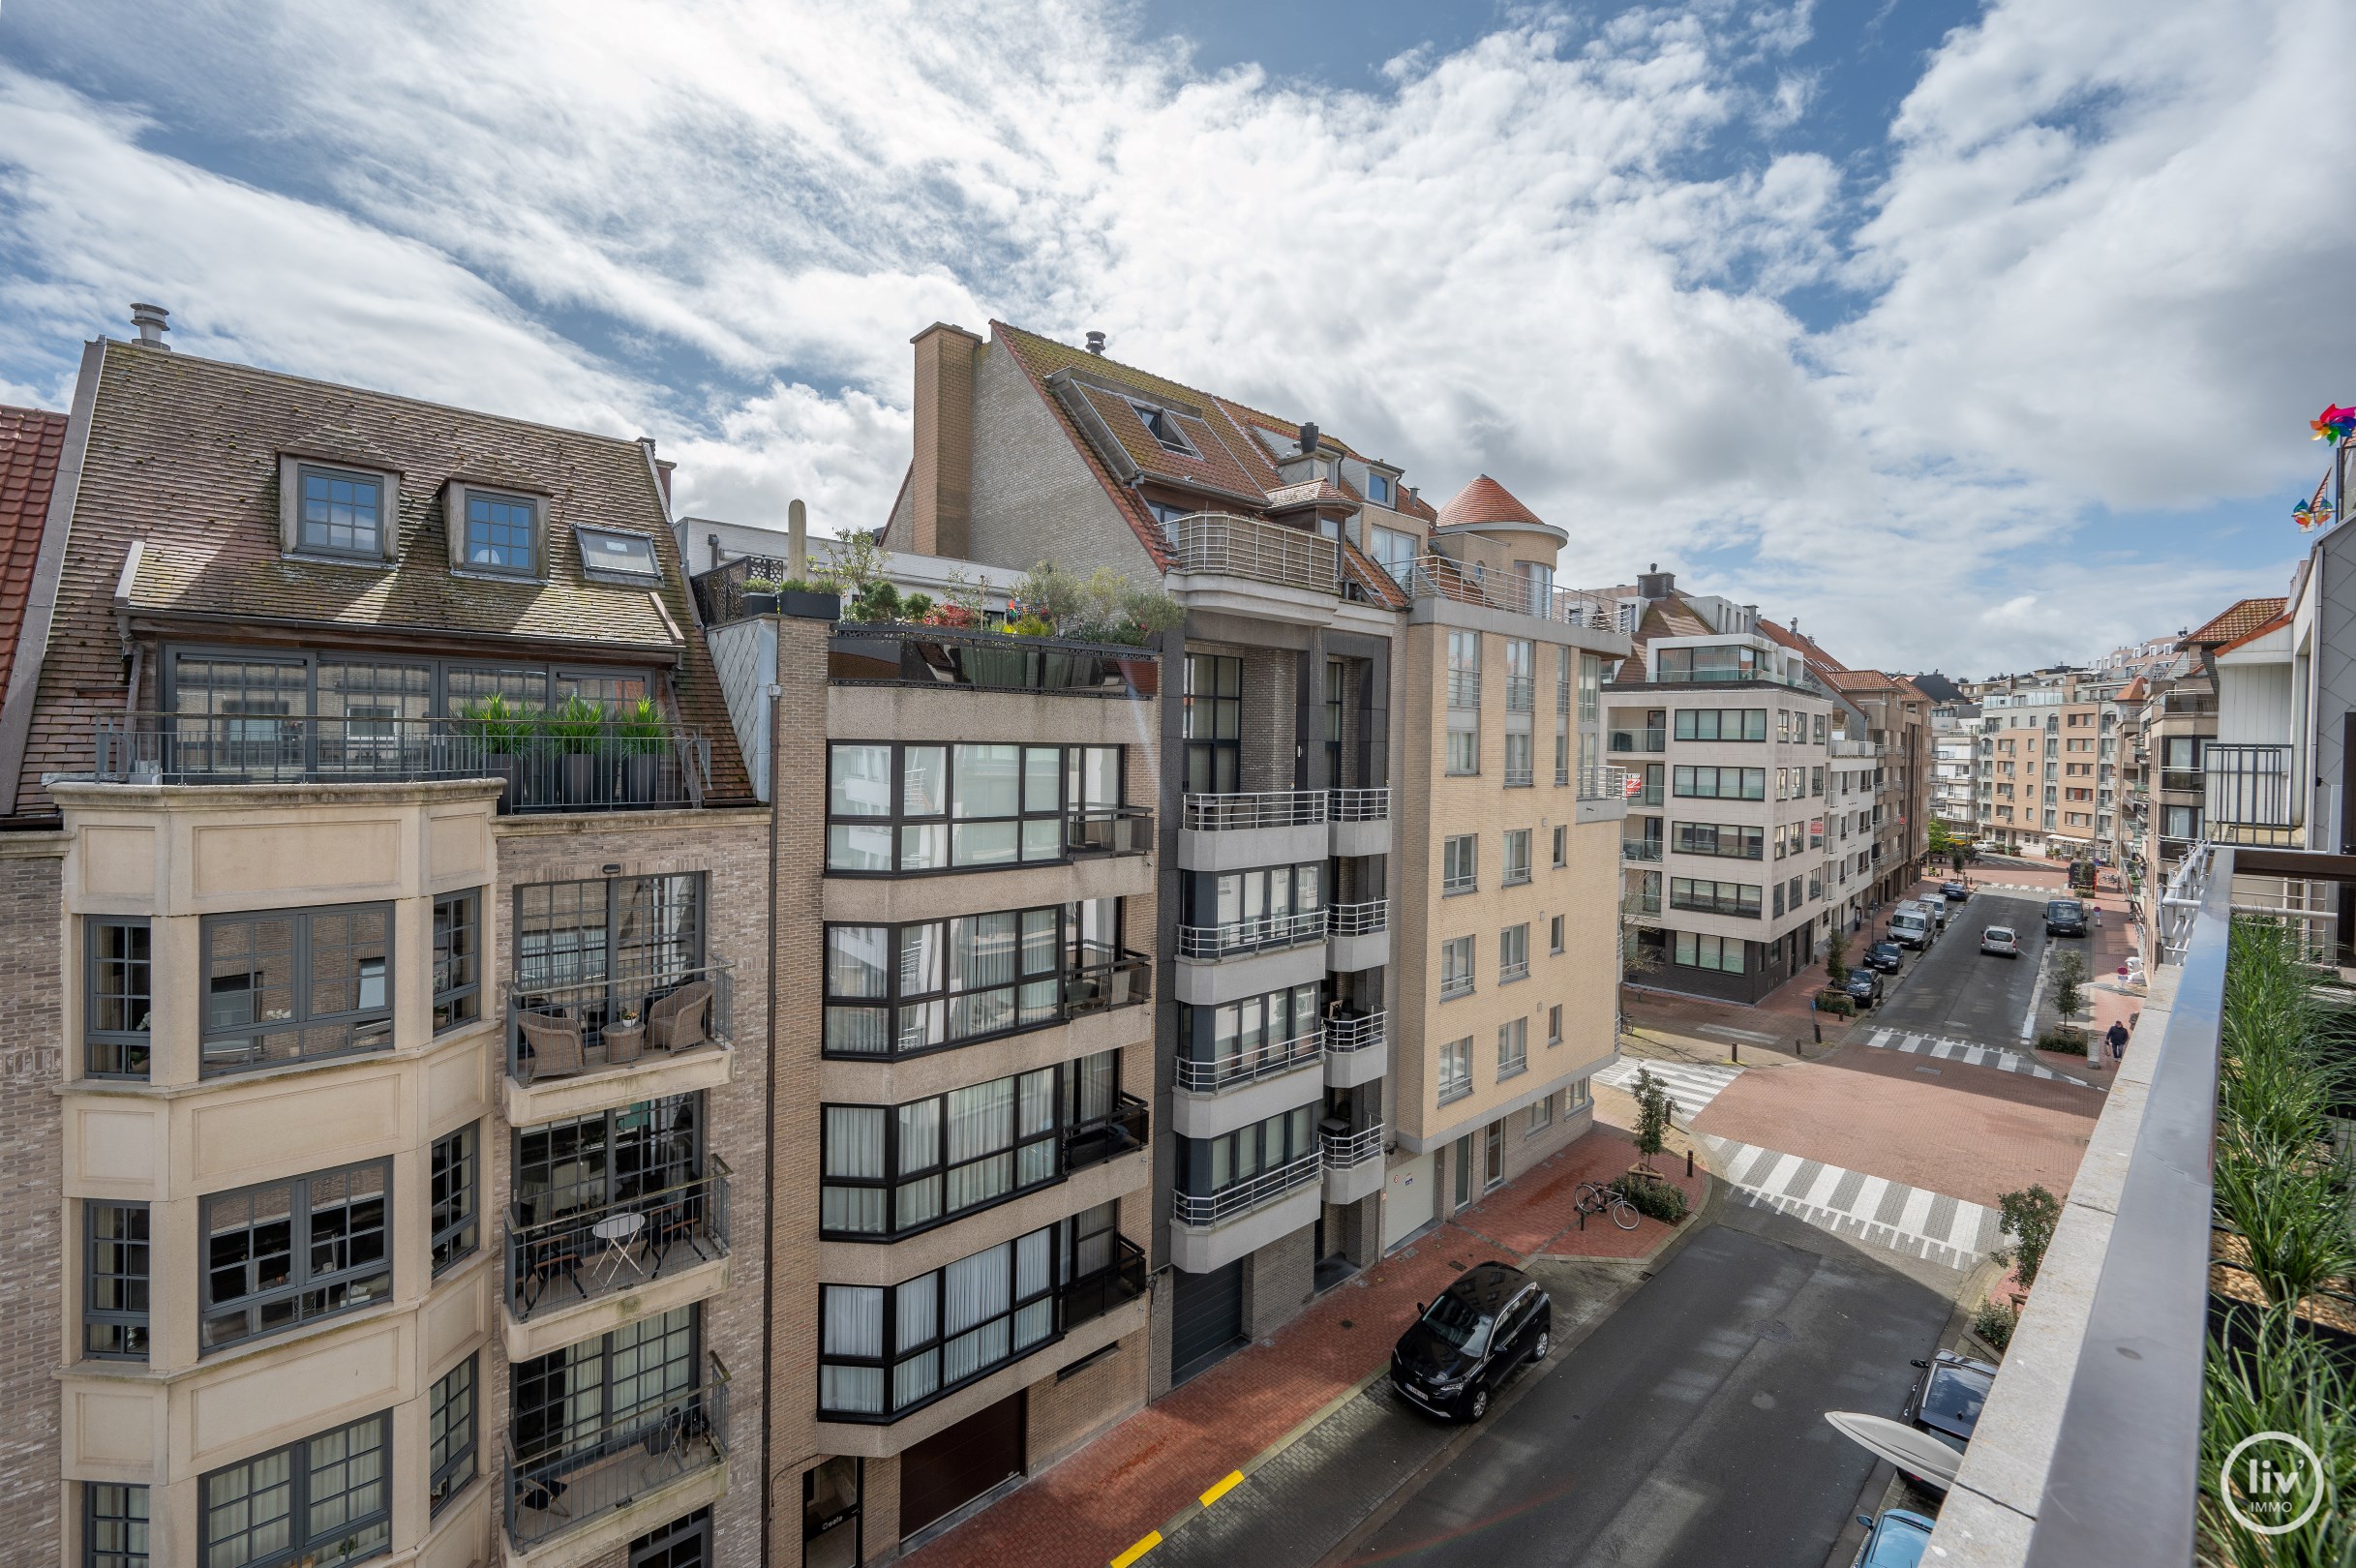 Bel appartement de 3 chambres avec une belle terrasse ensoleill&#233;e, id&#233;alement situ&#233; dans la rue Blancgarin, &#224; proximit&#233; de la digue &#224; Knokke. 